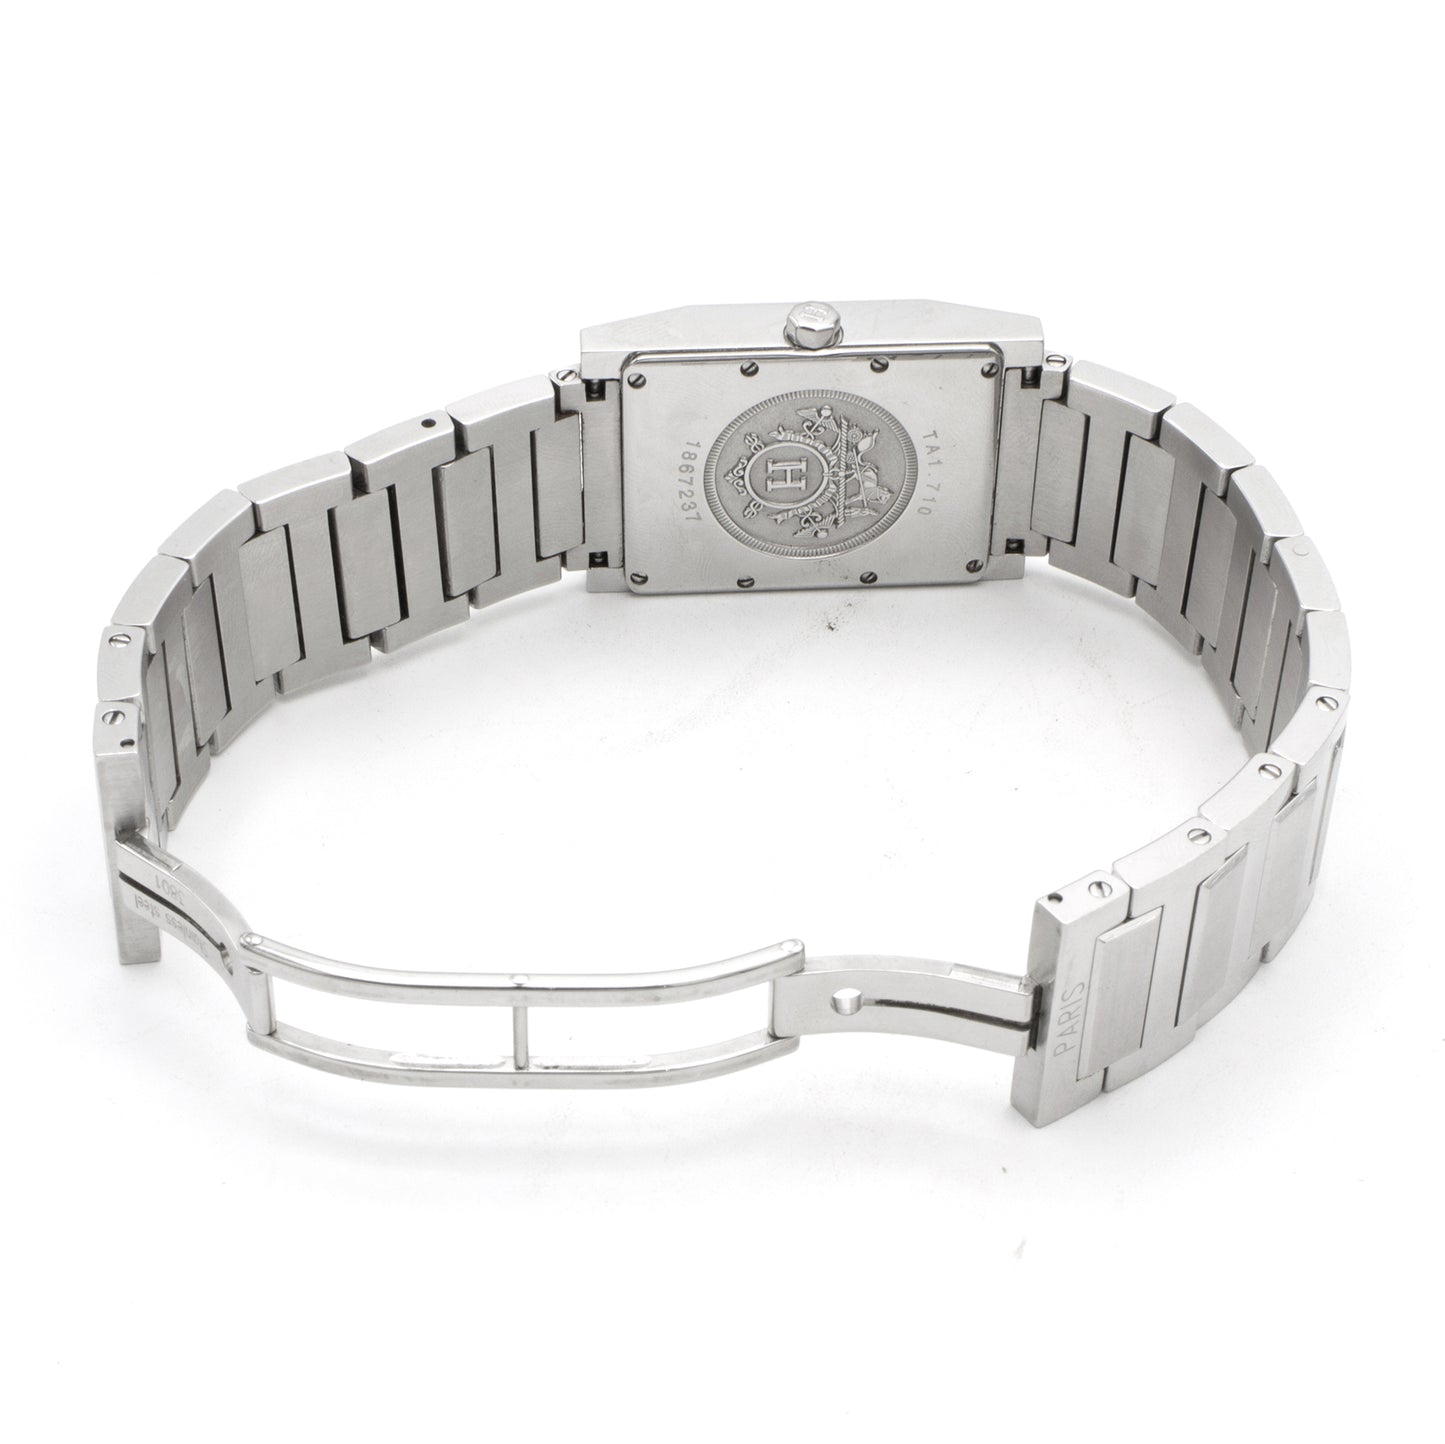 Hermès Tandem TA1.710 blue dial watch